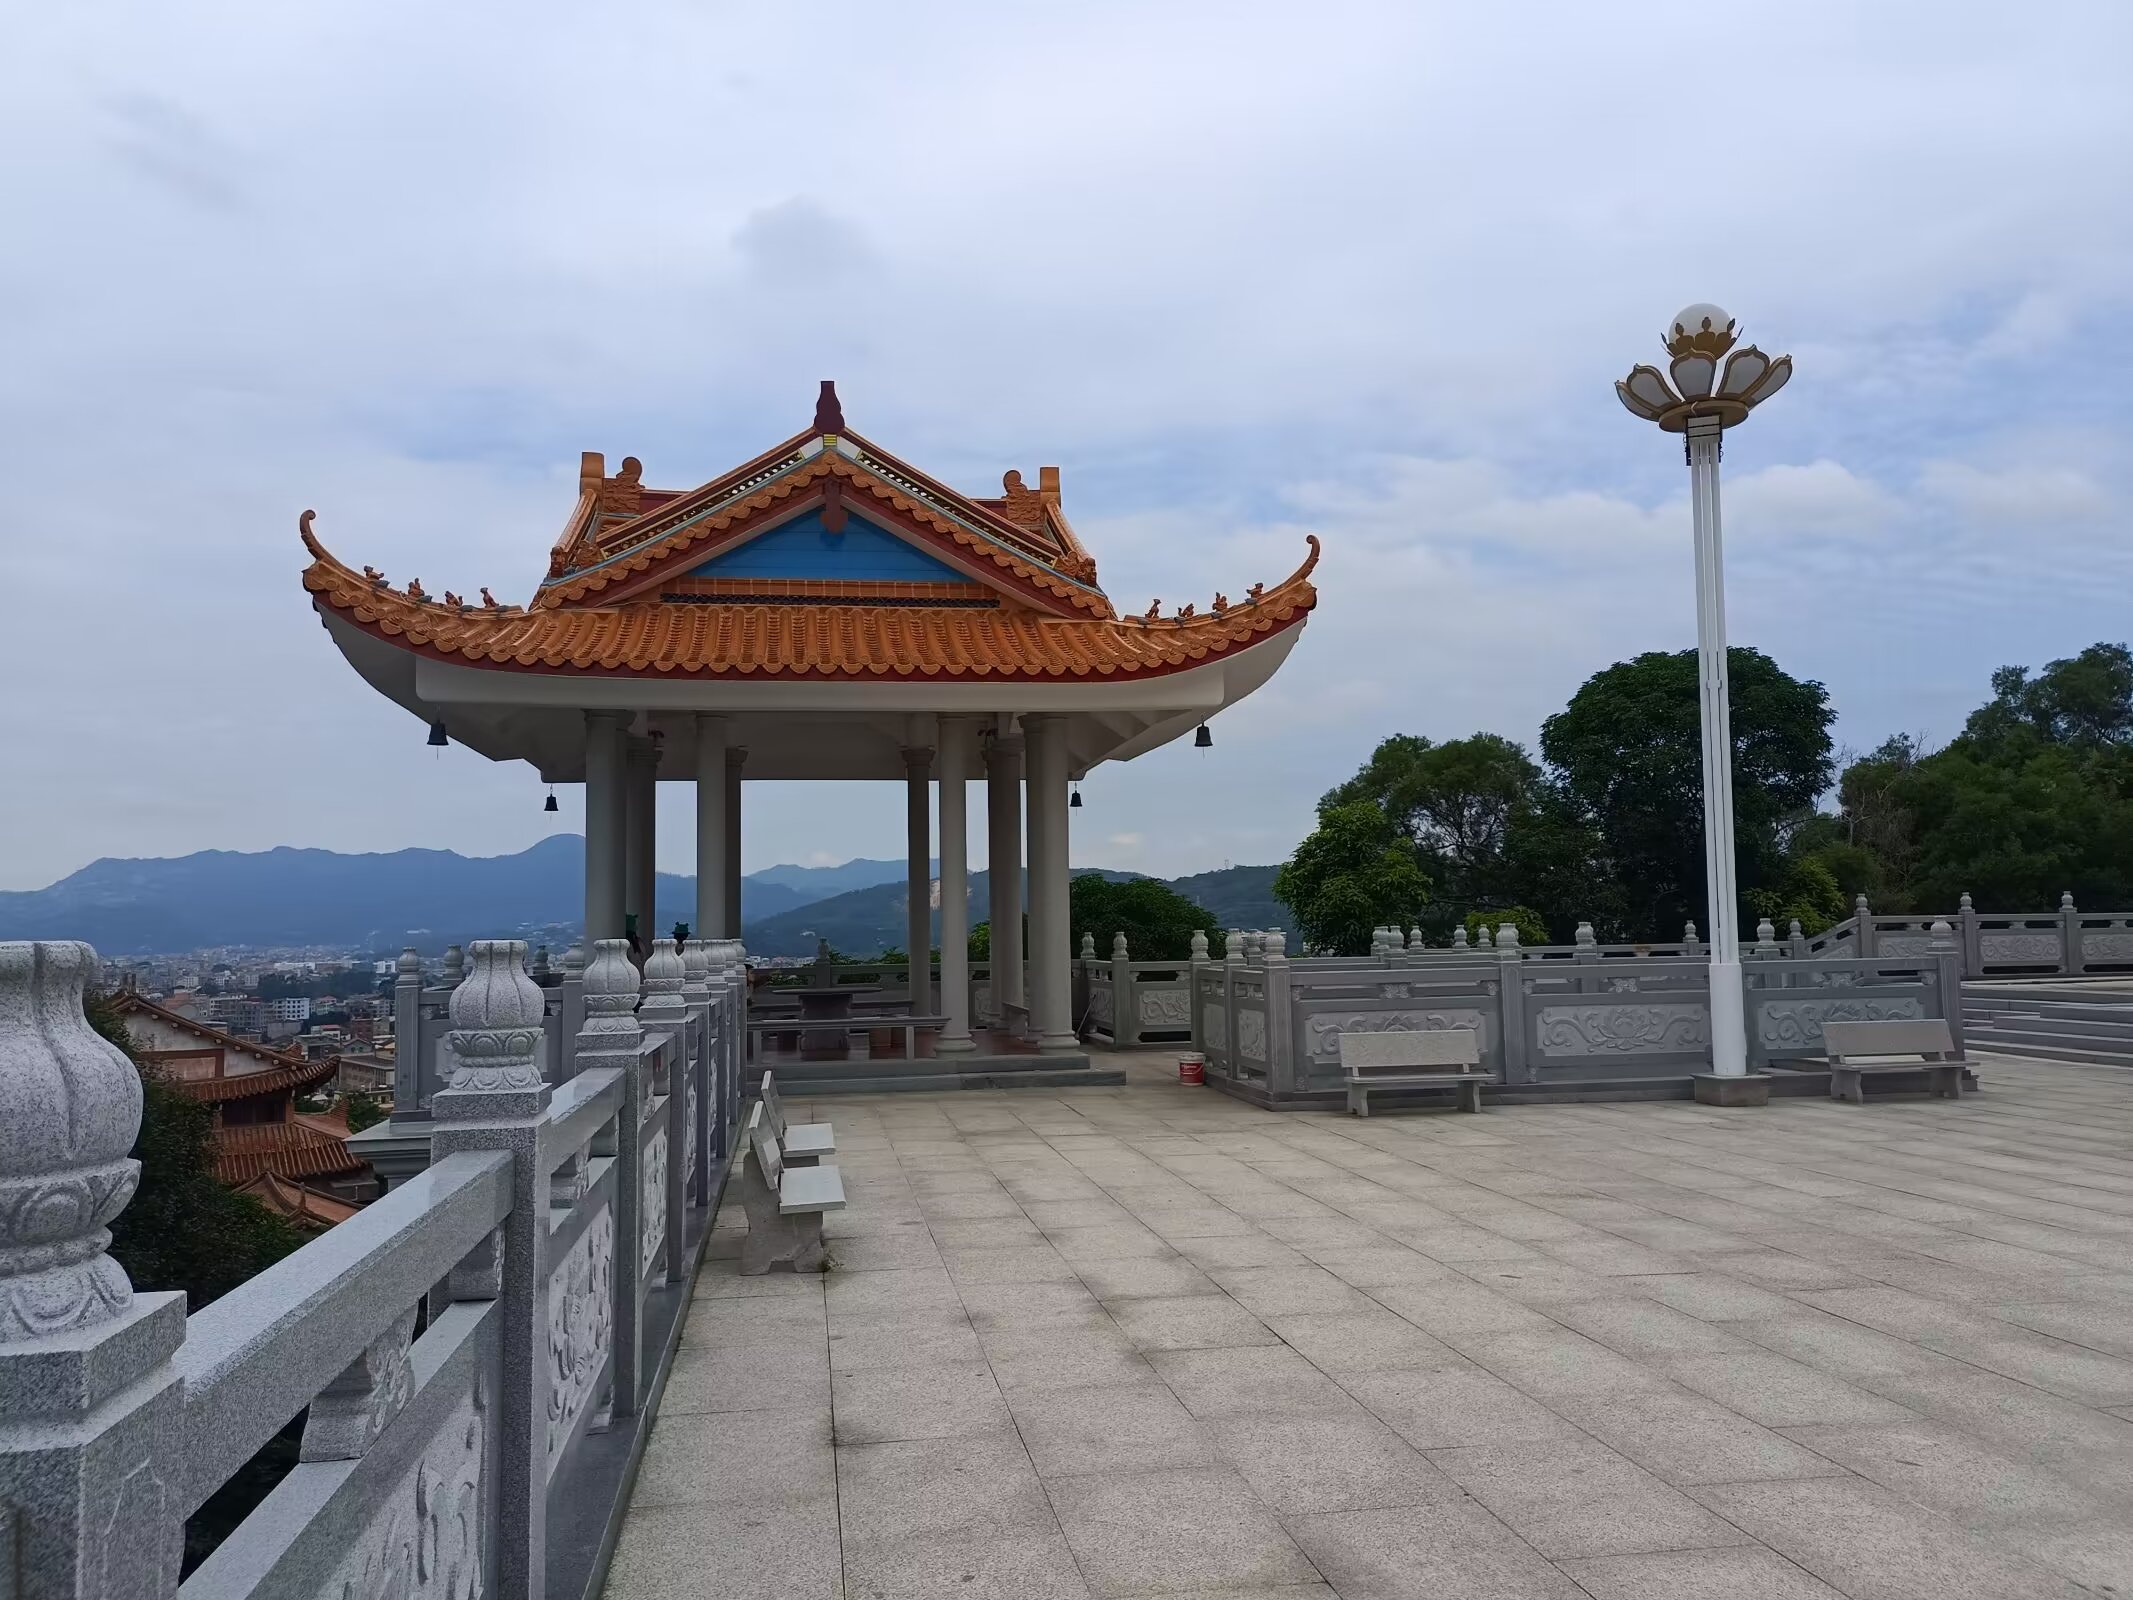 仙游县枫亭镇塔斗山上的天中万寿塔,又称塔斗塔或青螺塔,以其独特的阿